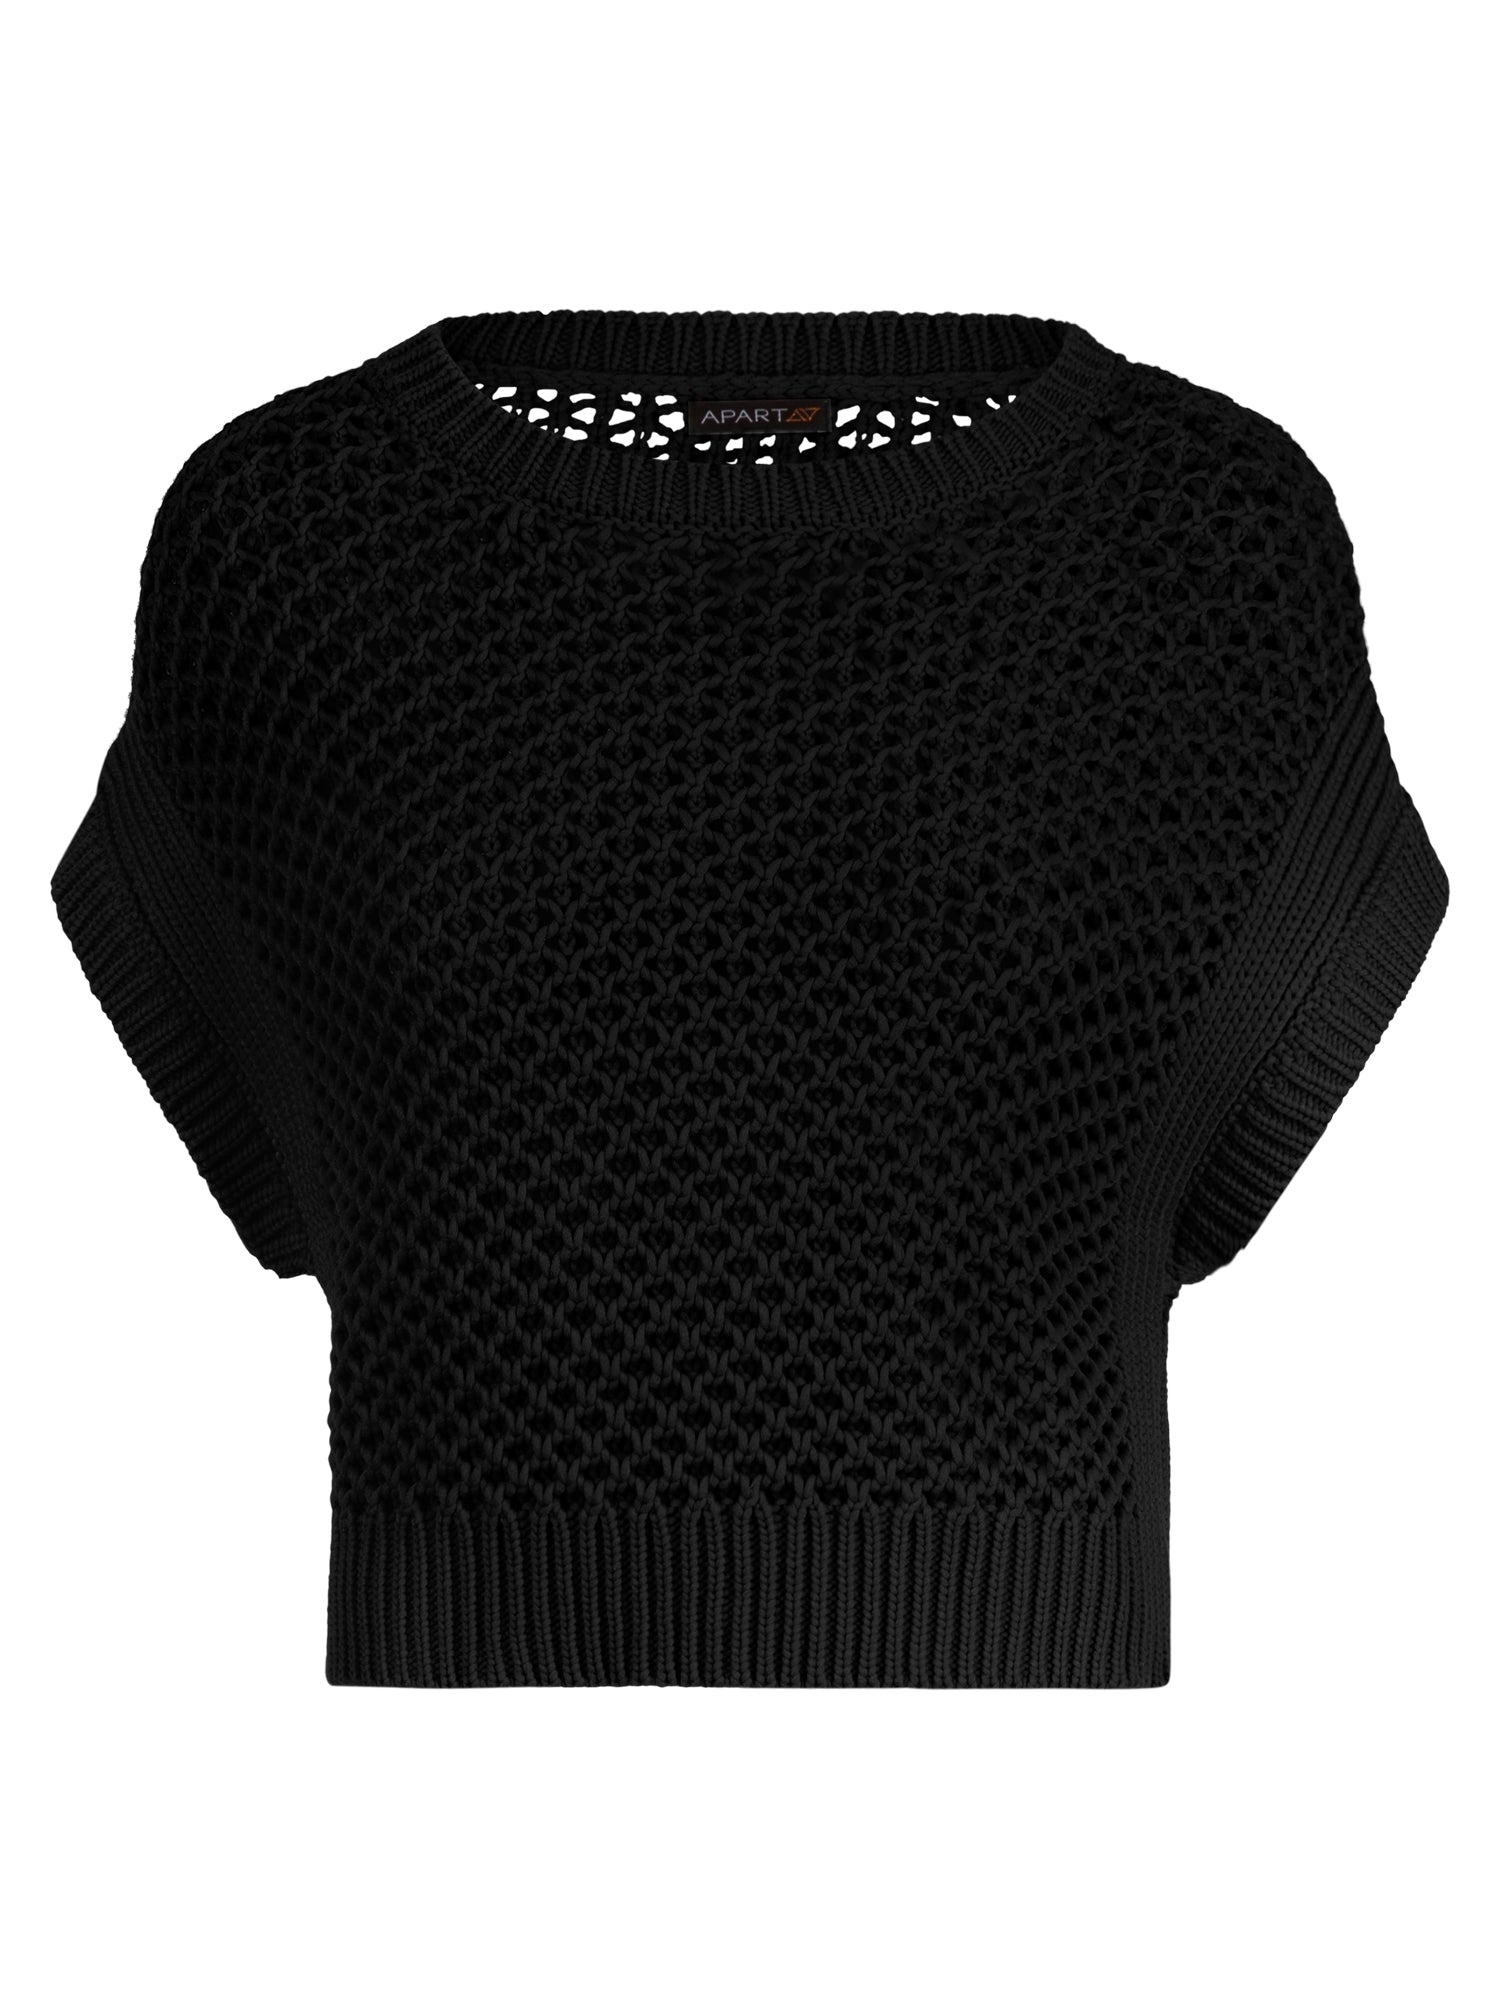 APART Pullover mit allover Lochmuster | schwarz